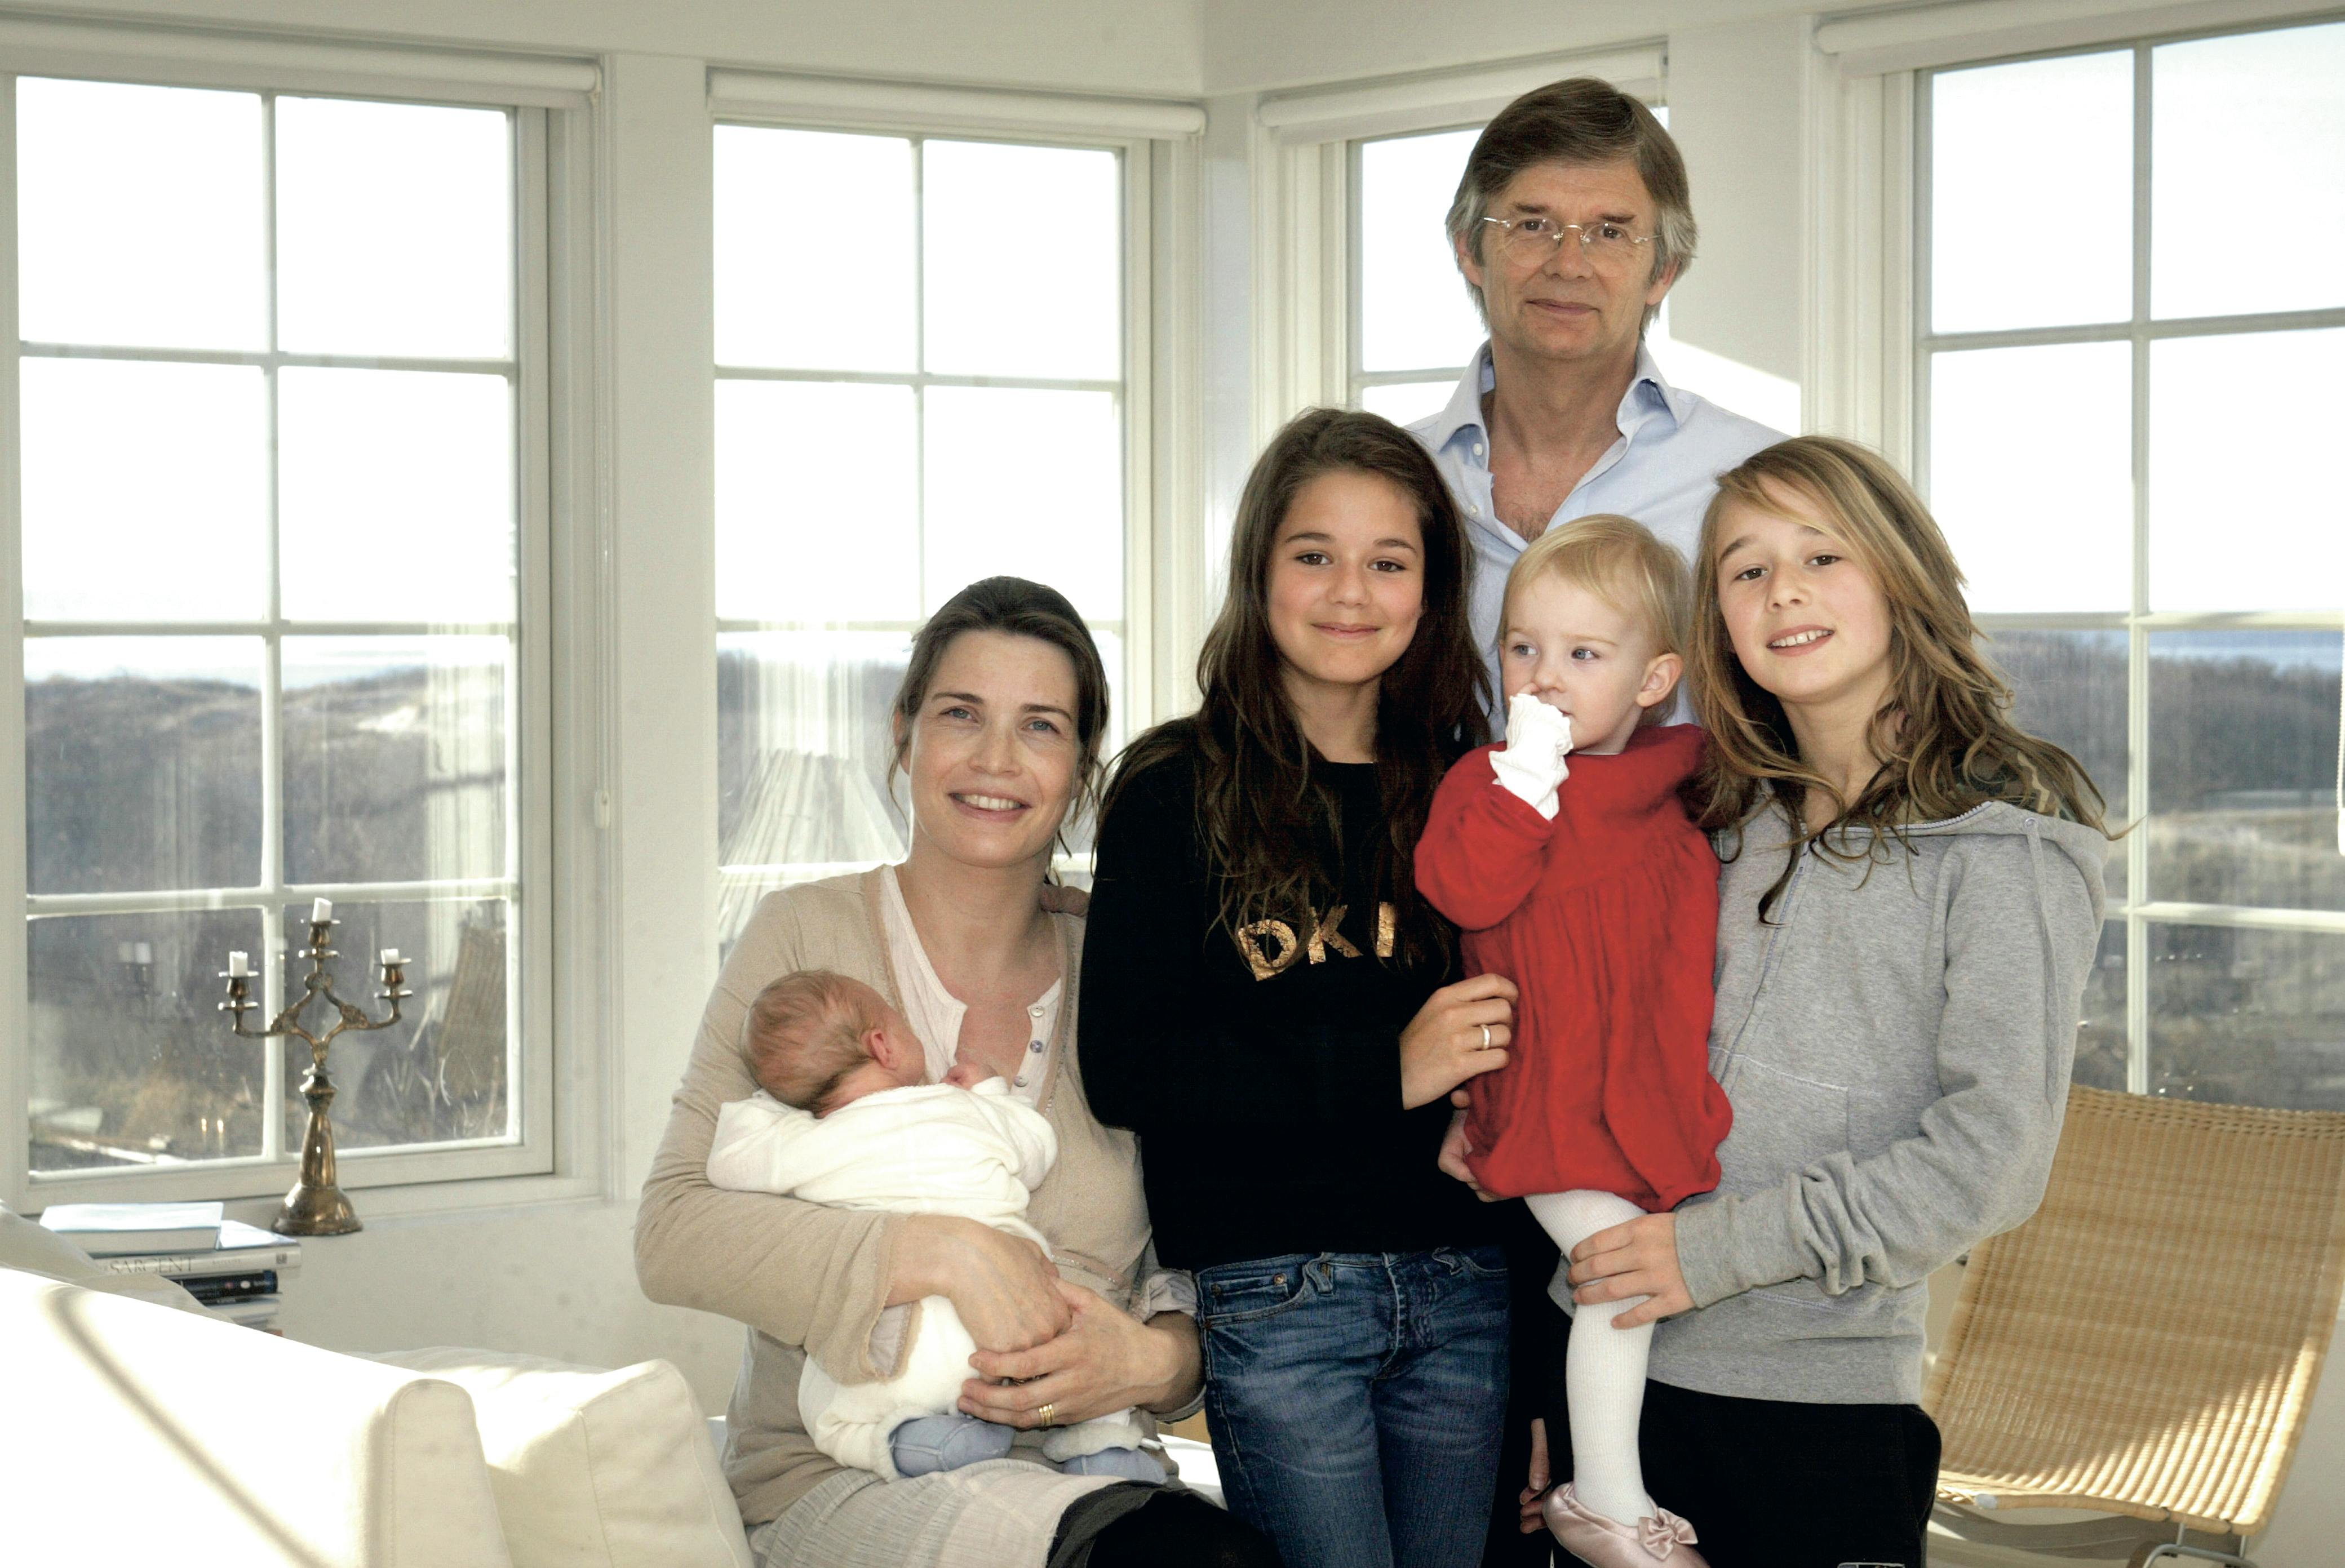 Asta og Alba august fotograferet i 2005 med deres far, Bille August, og bonusmor, Sara-Marie Maltha, samt lillesøster Amaryllis, som Alba har på armen, og lillebror Amadeus, der dengang var nyfødt.&nbsp;
